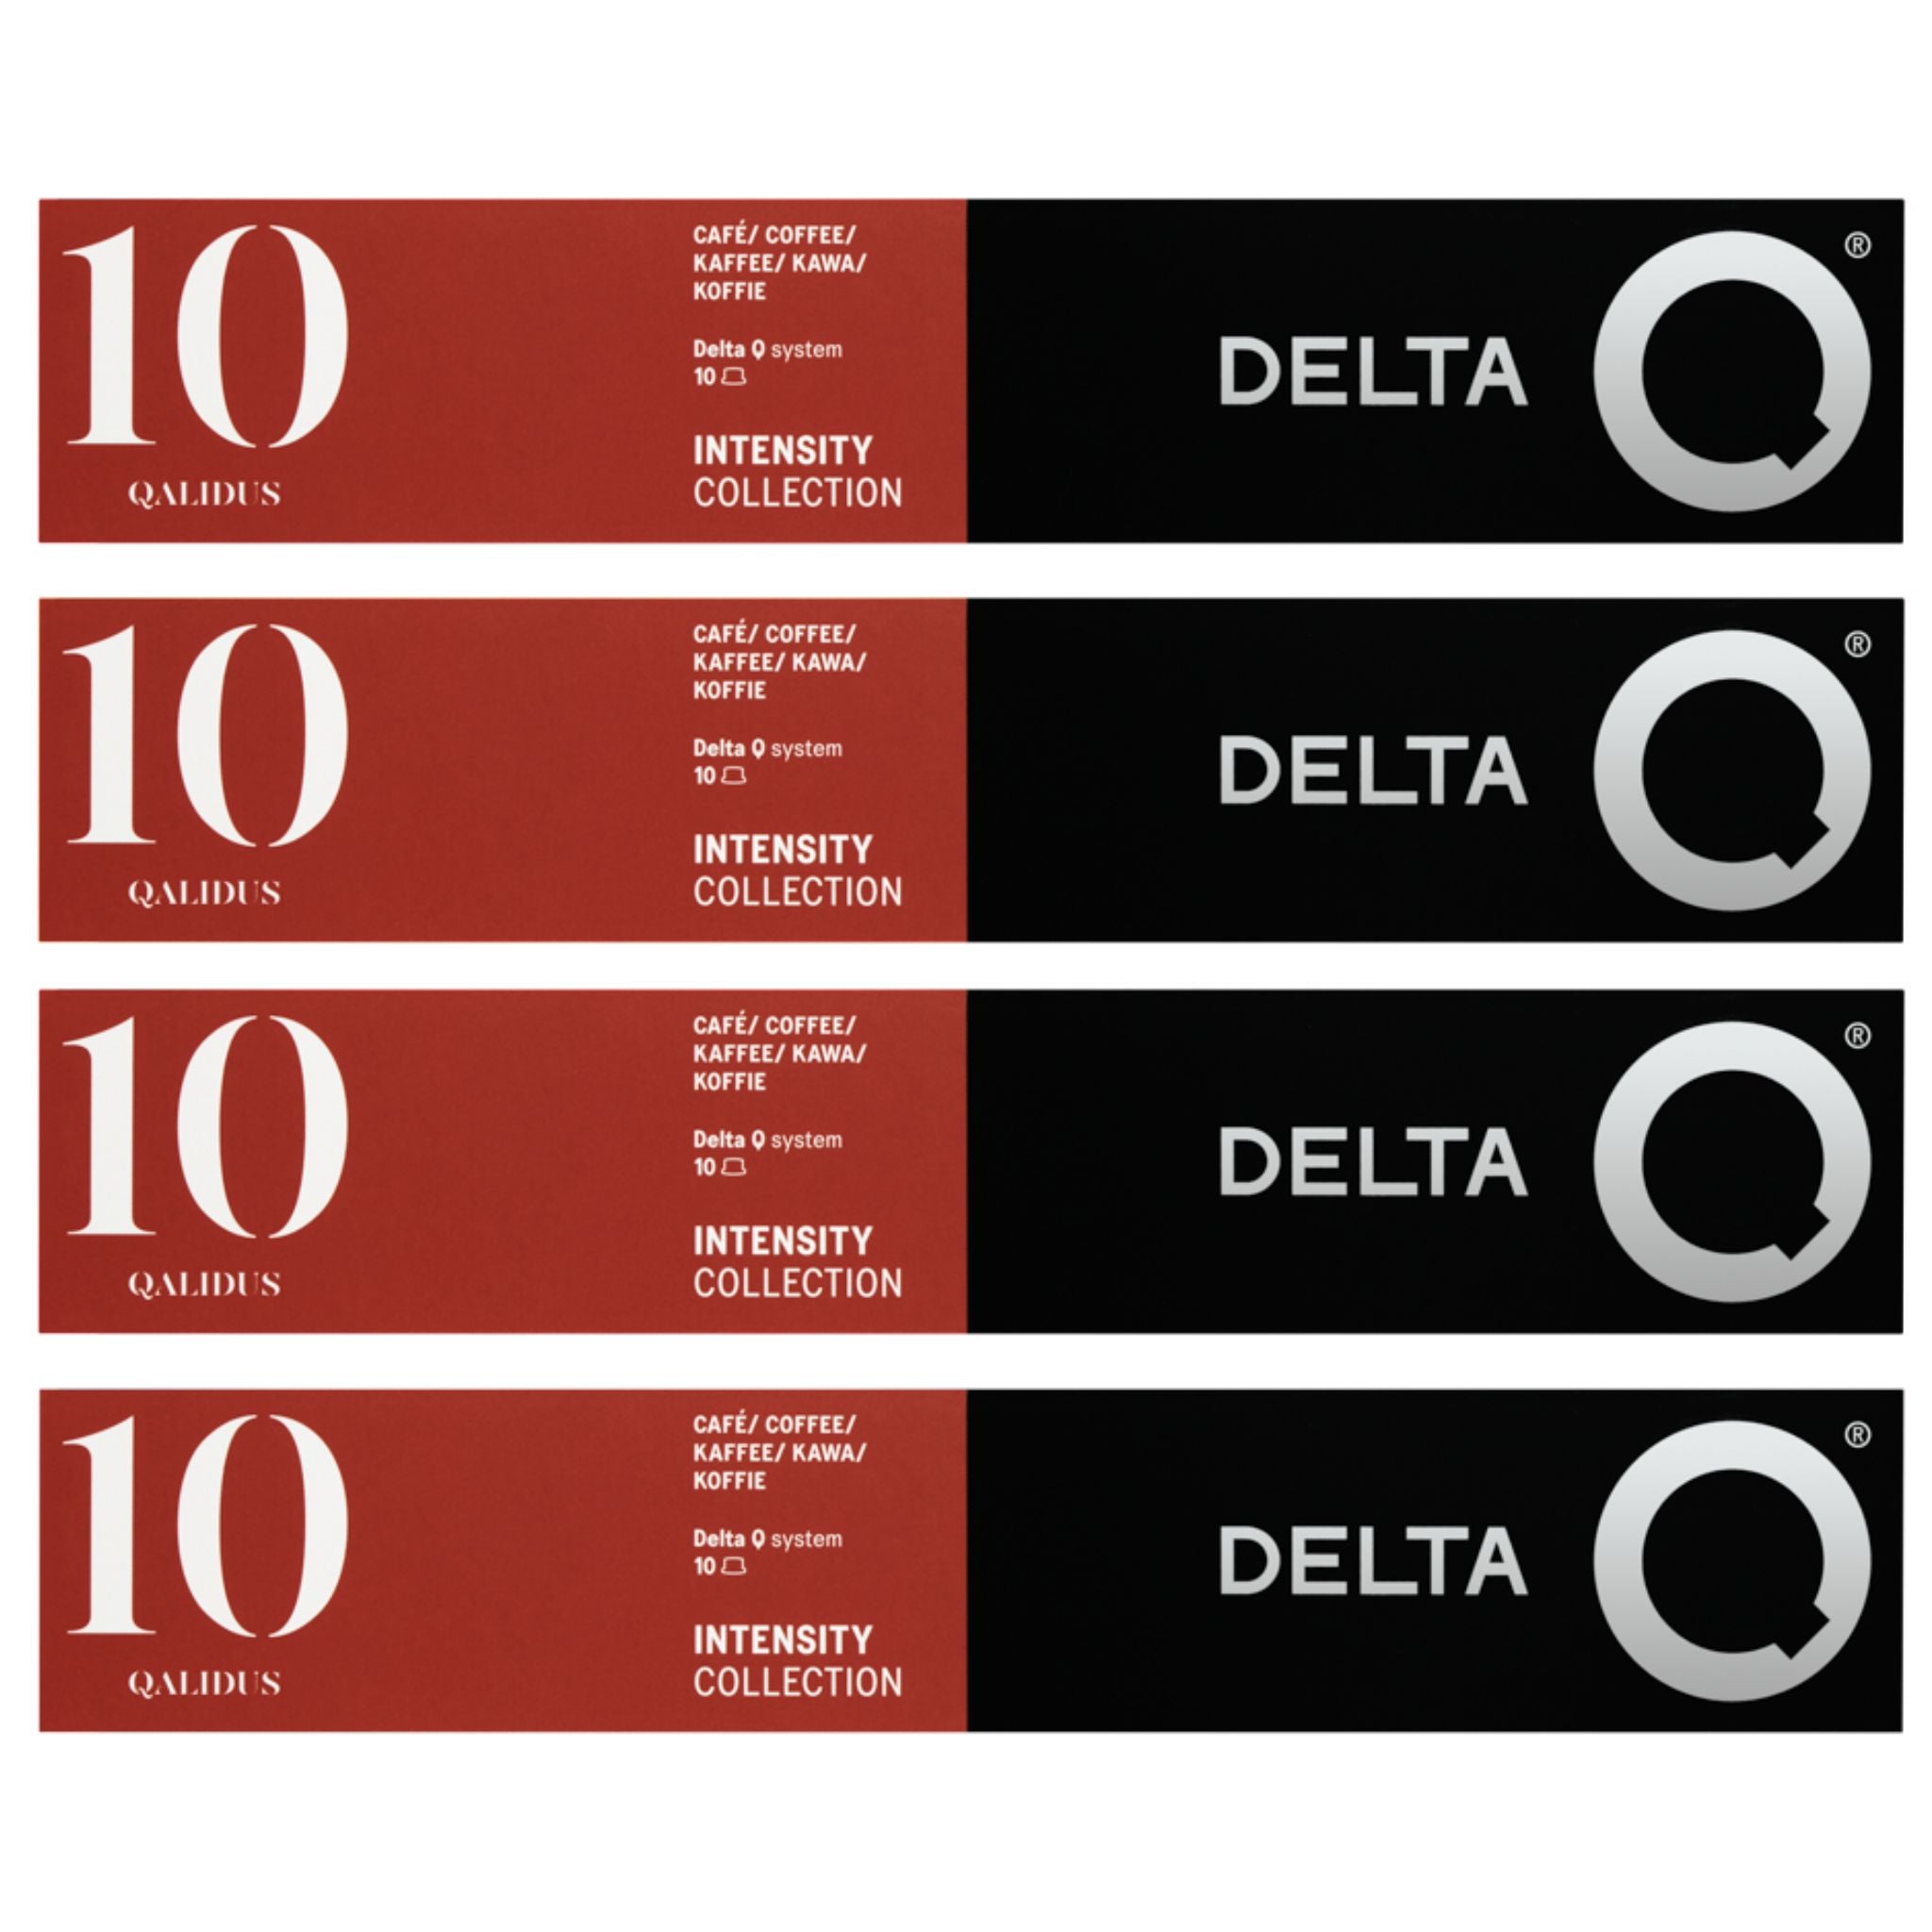 Delta Q Espresso Capsules Qalidus #10, 4 Boxes – Portugalia Sales Inc